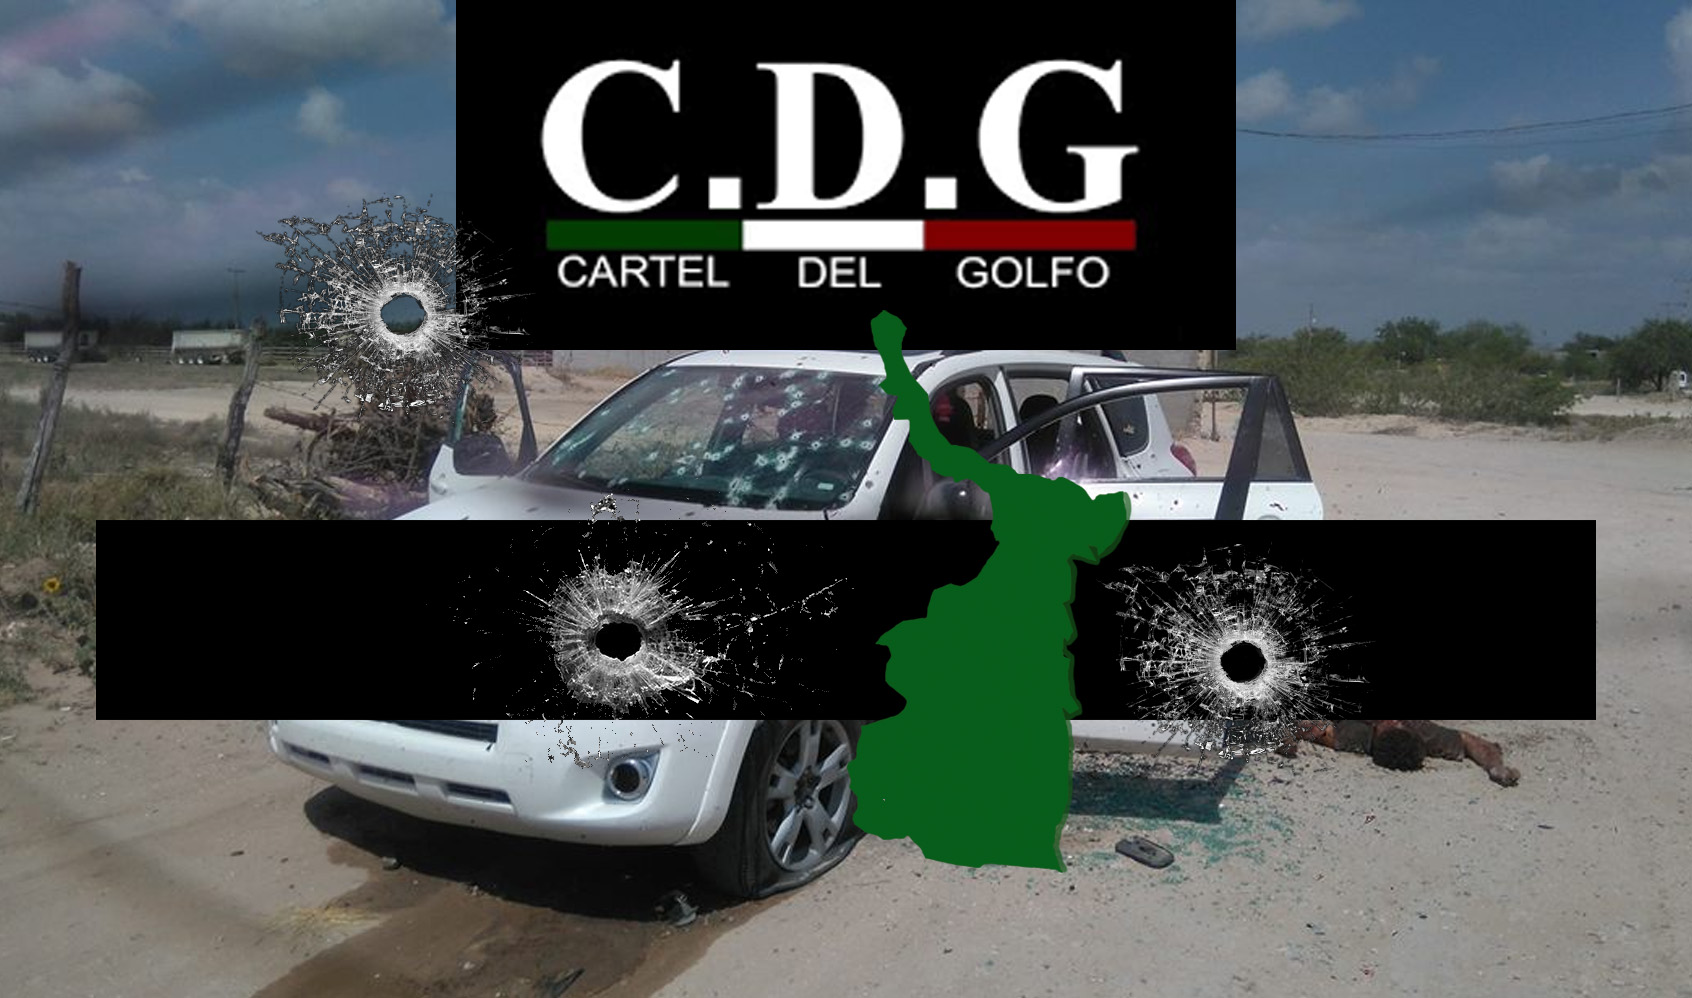 Reynosa: Al menos 5 sicarios muertos en enfrentamientos del CDG. Panilo VS Betito